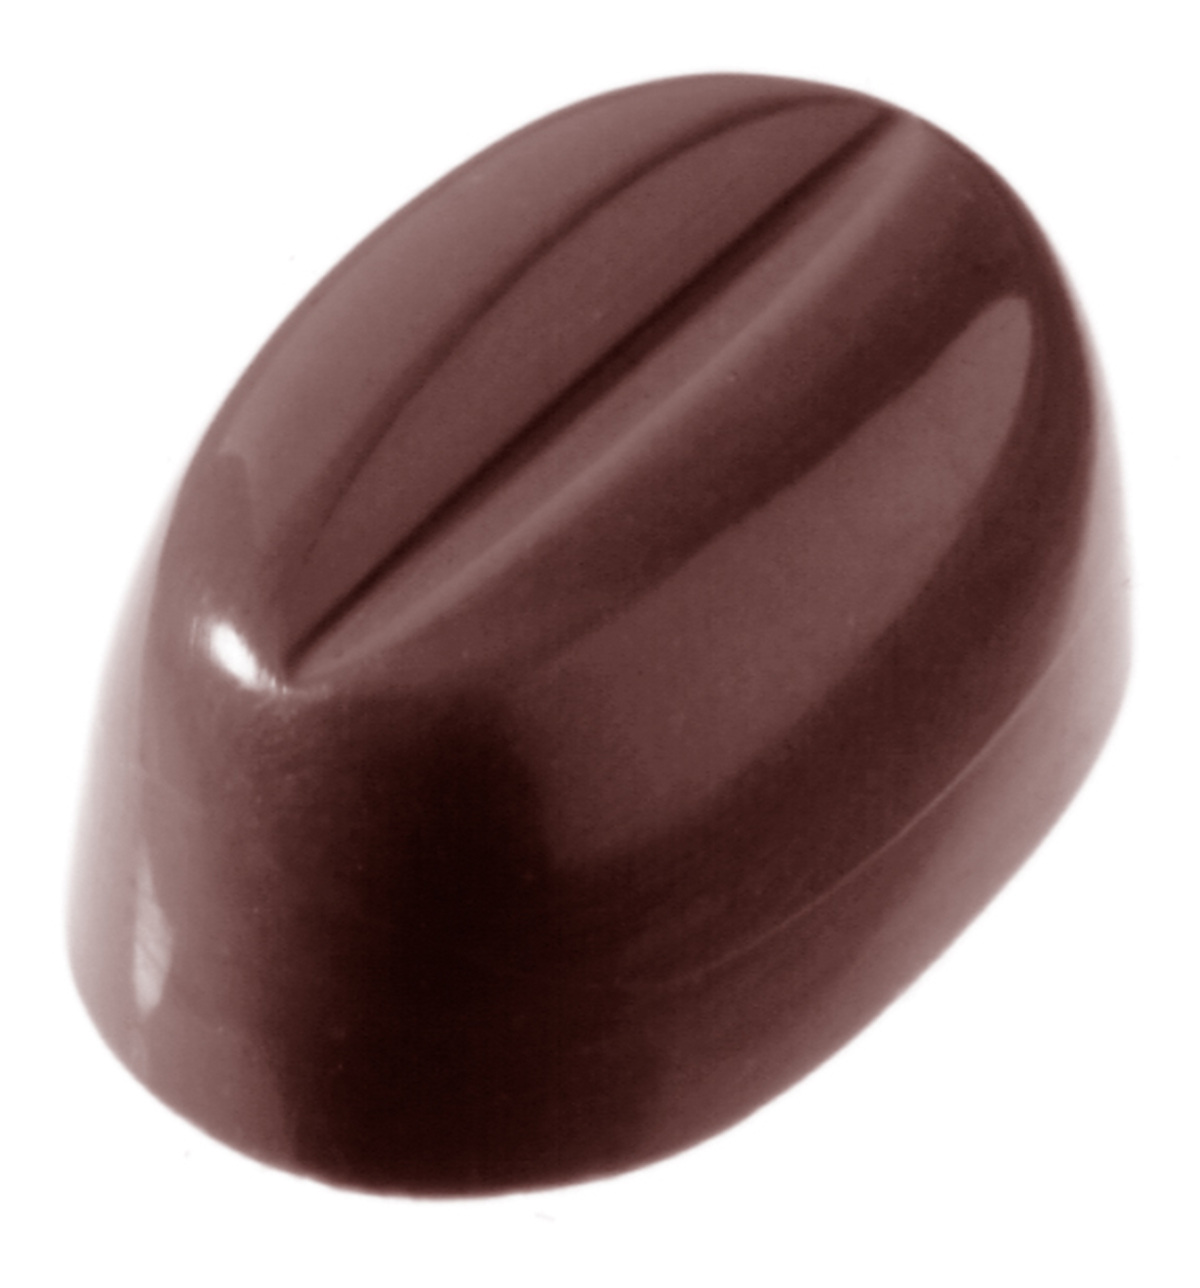 Se Professionel chokoladeform i polycarbonat - Coffee bean CW1327 hos BageTid.dk